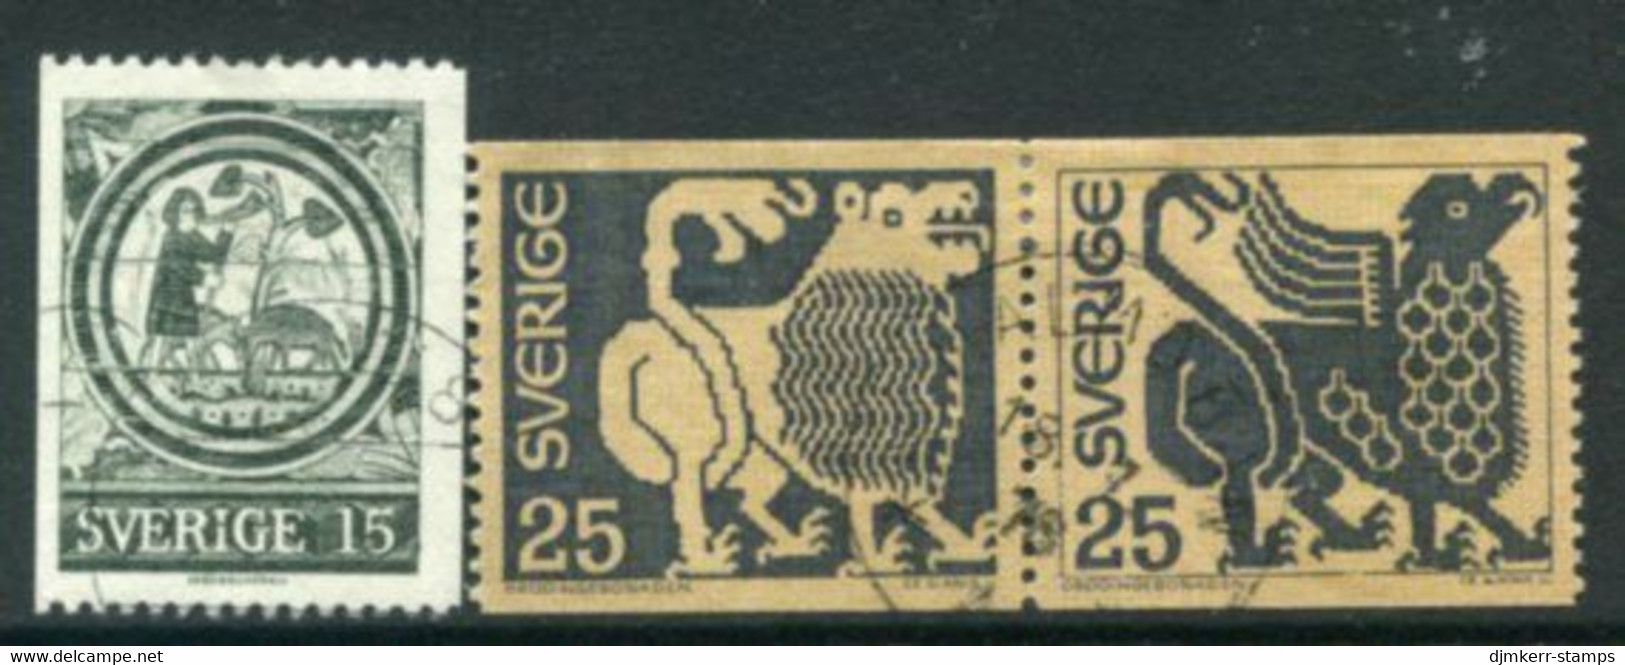 SWEDEN 1971 Definitive: Art Used.  Michel 706-08 - Oblitérés